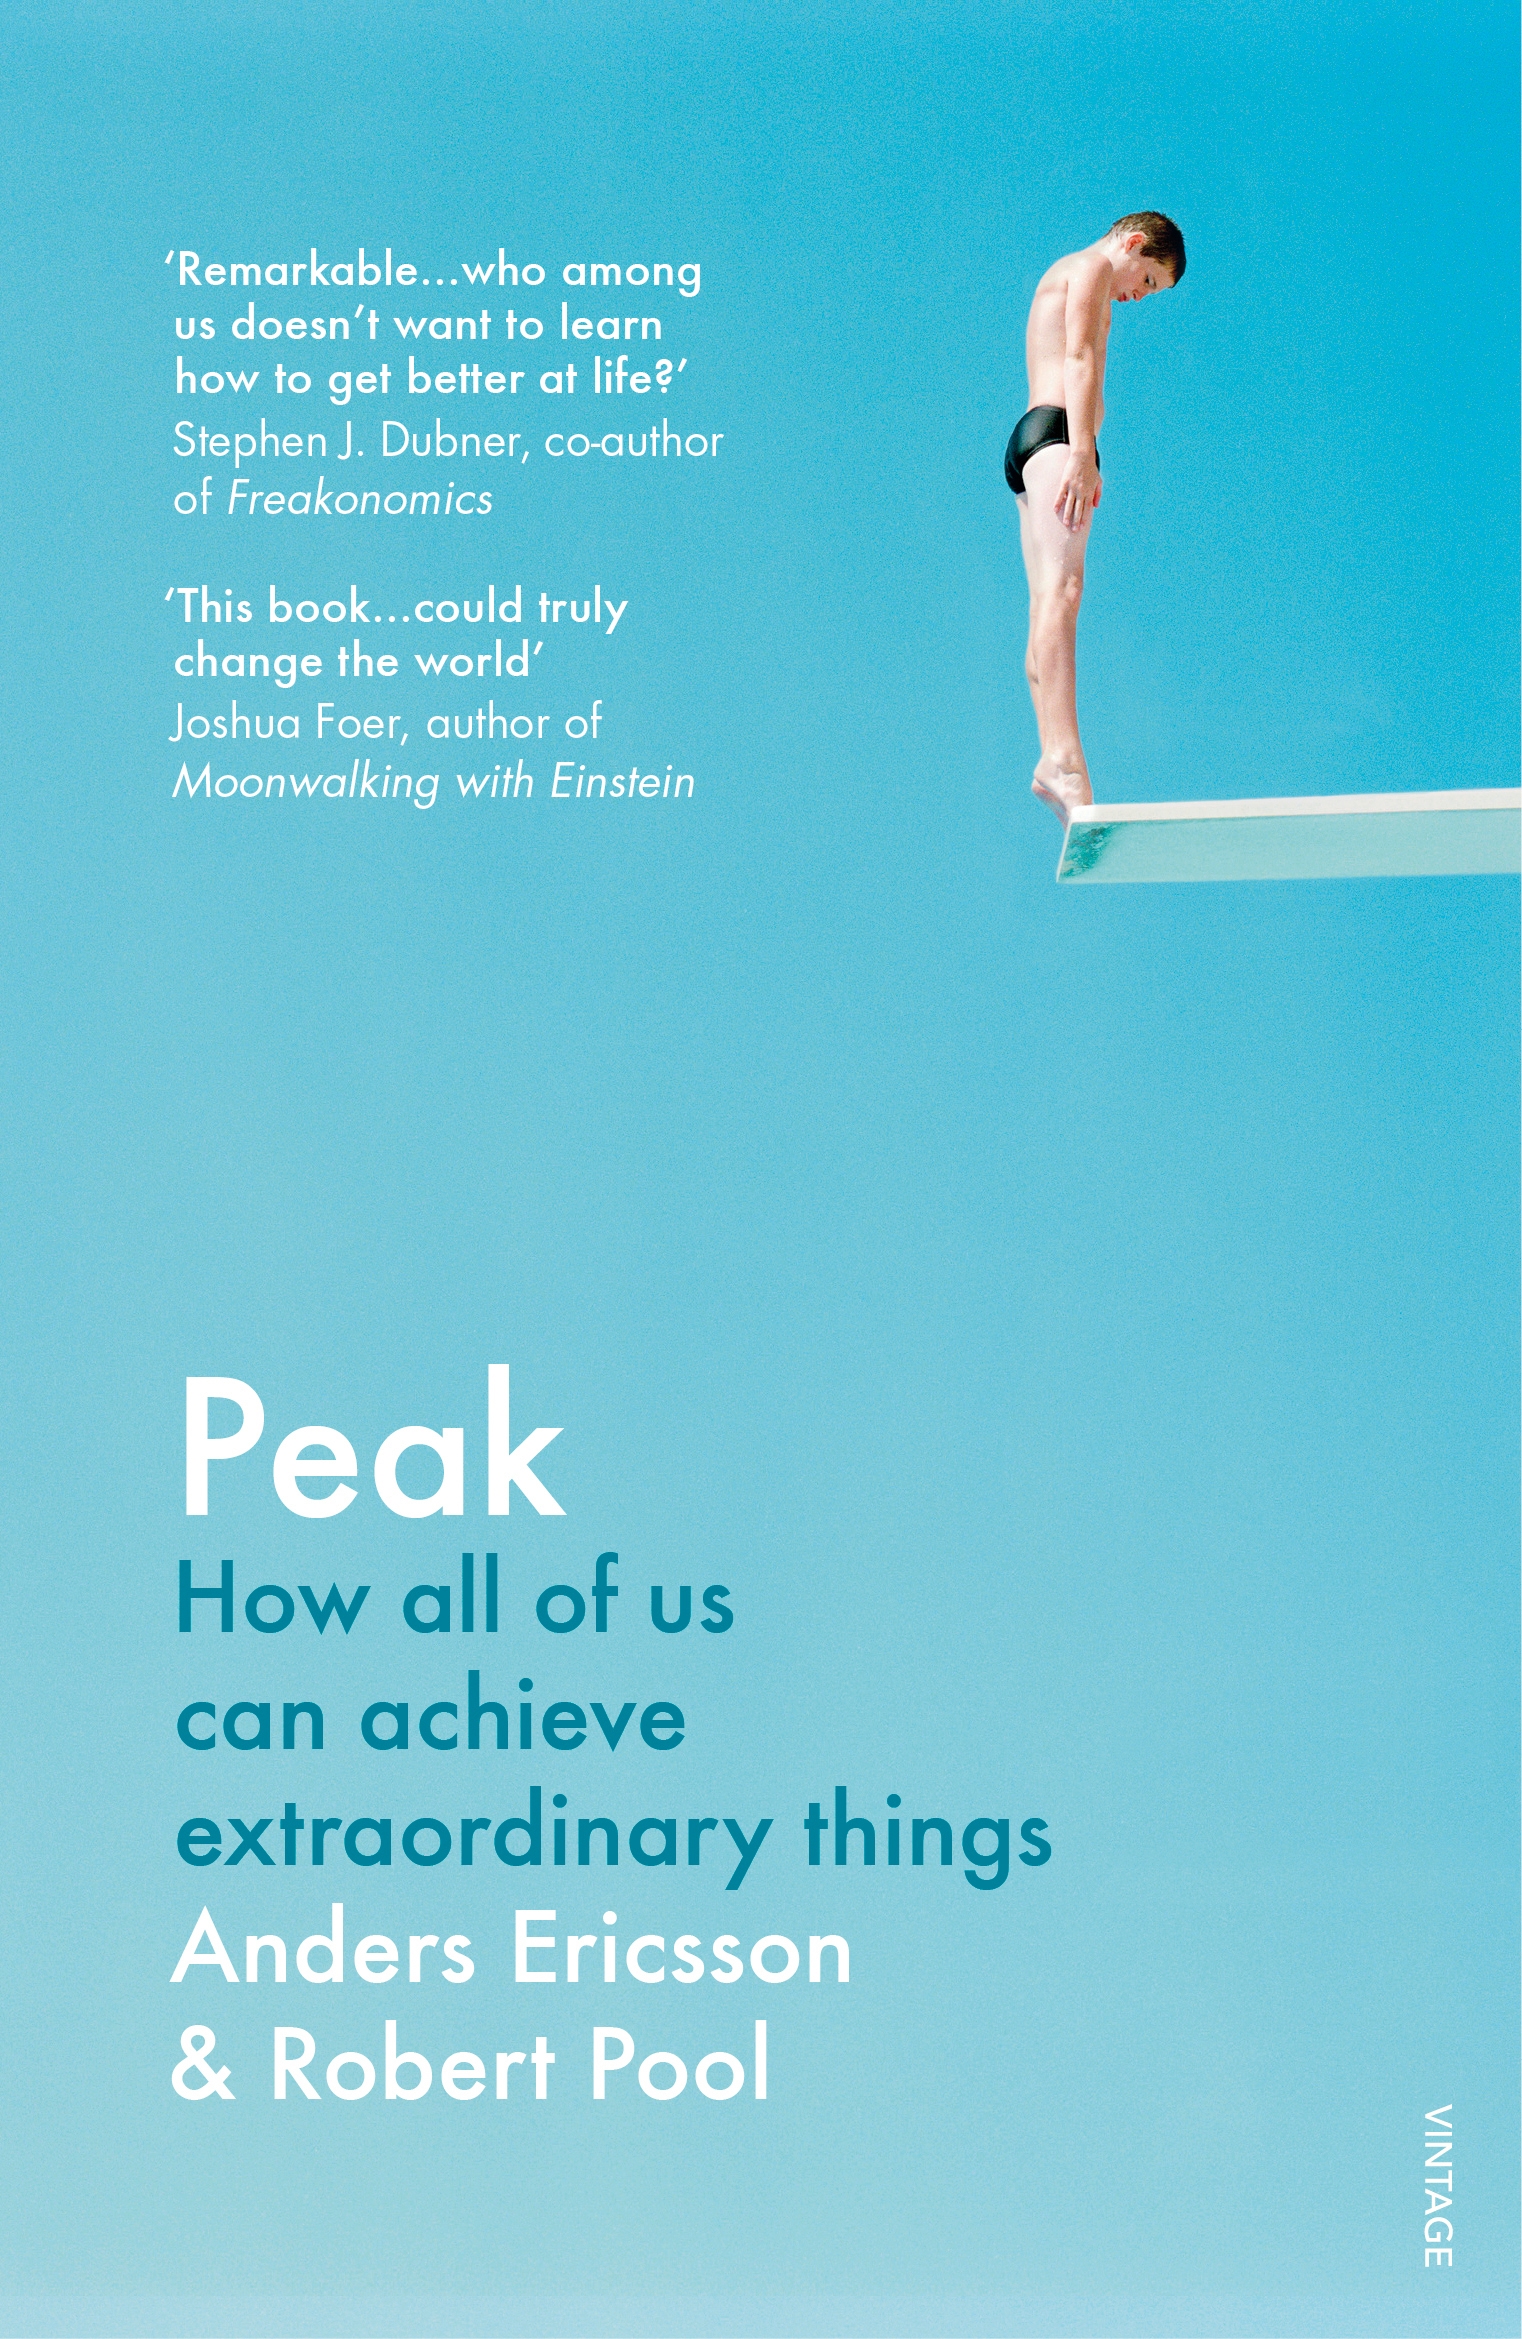 book review of peak